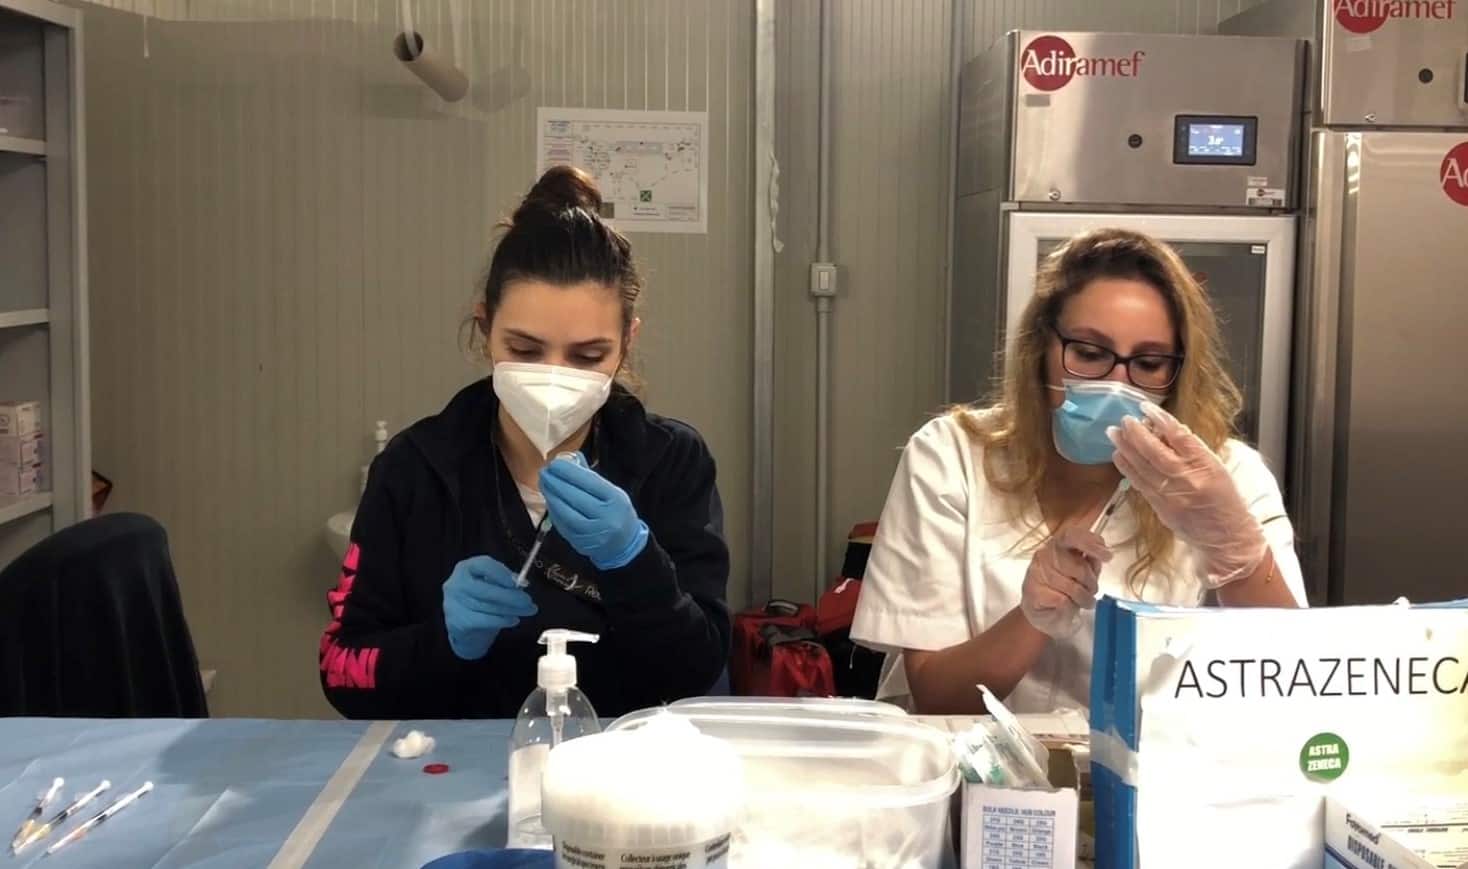 Nell'immagine due membri del personale sanitario, intenti a preparare le siringhe per le somministrazioni del vaccino Astrazeneca